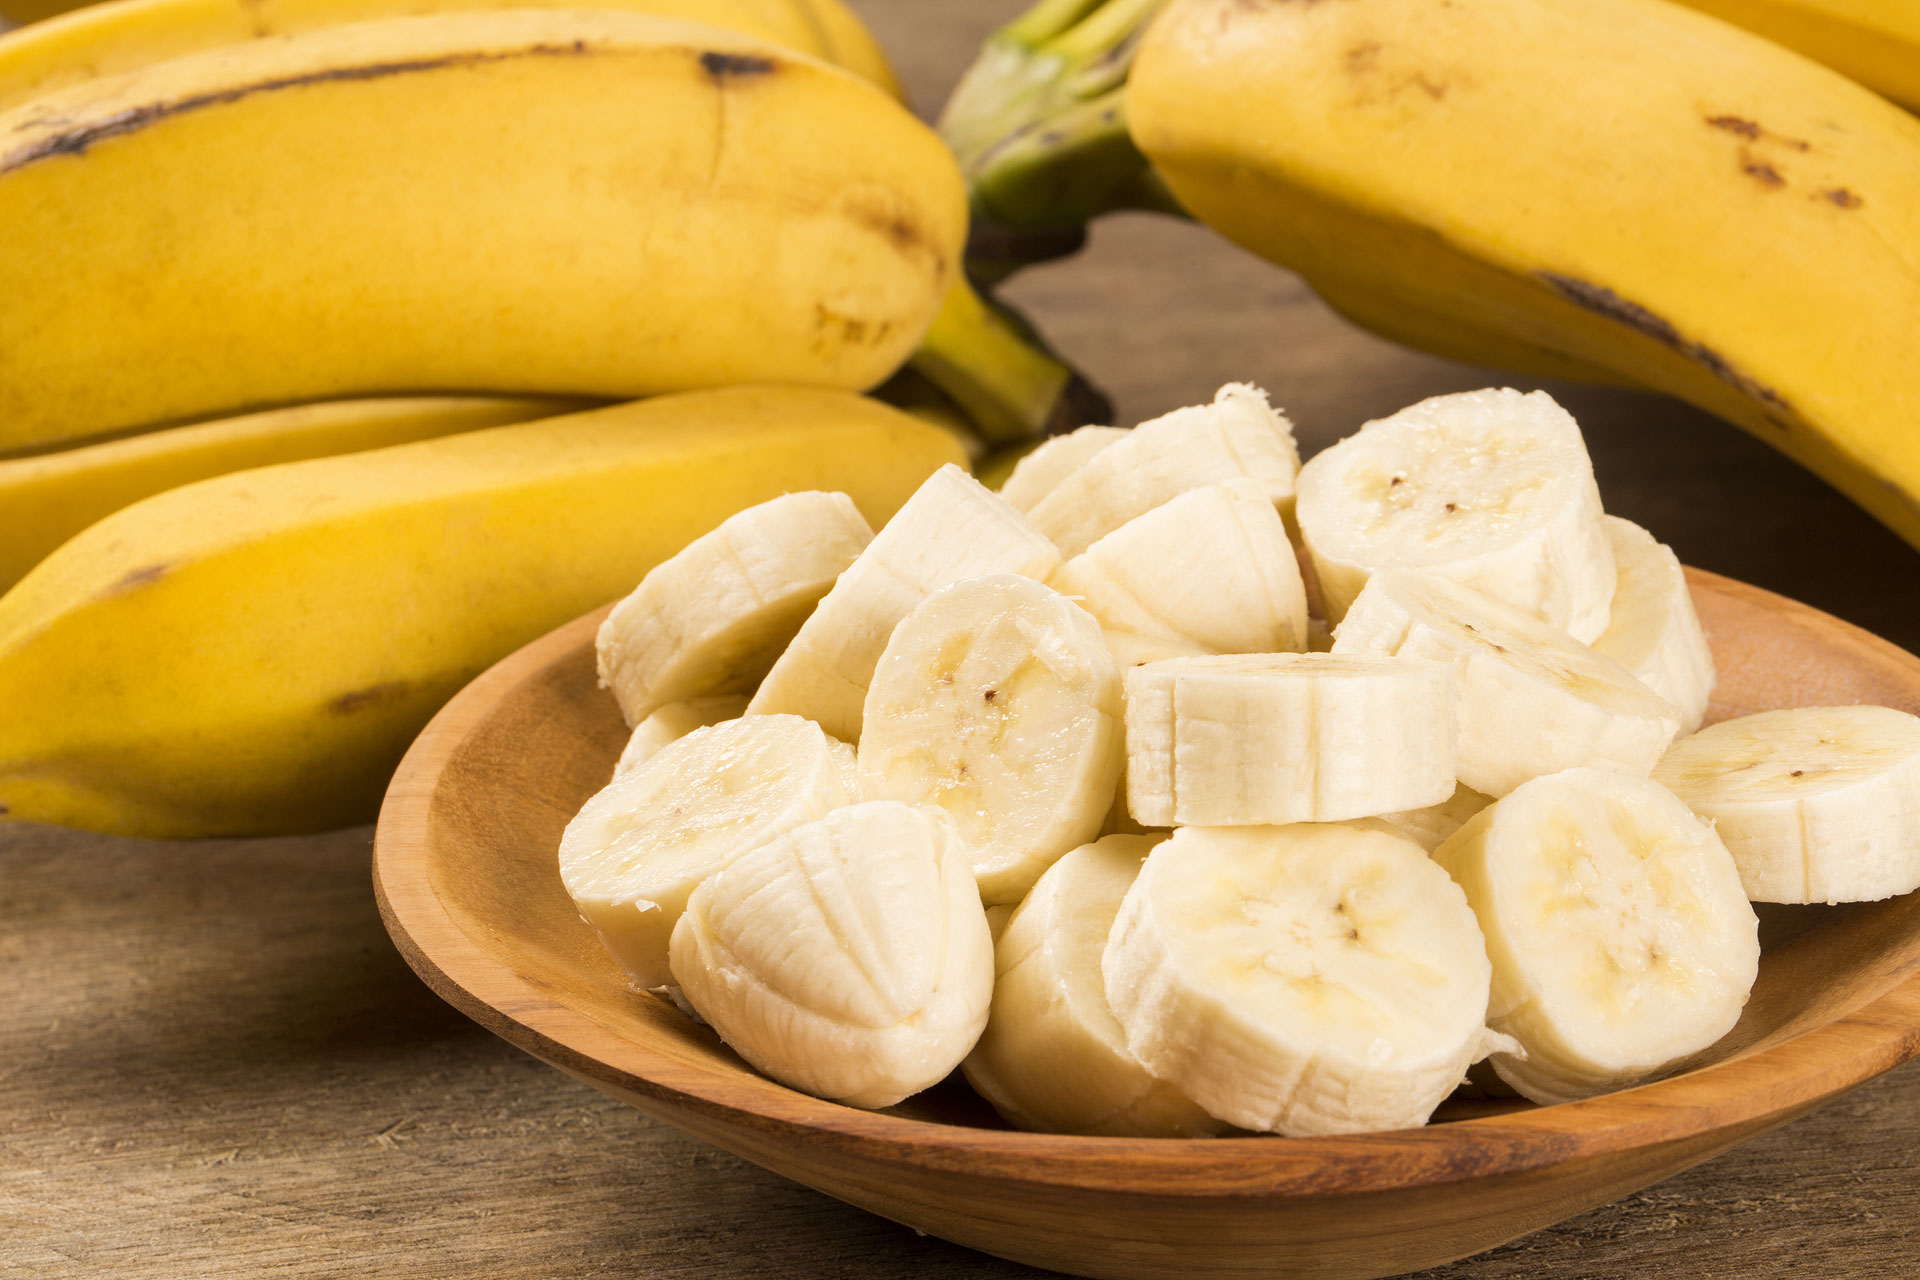 La banana tiene el doble de carbohidratos que otras frutas